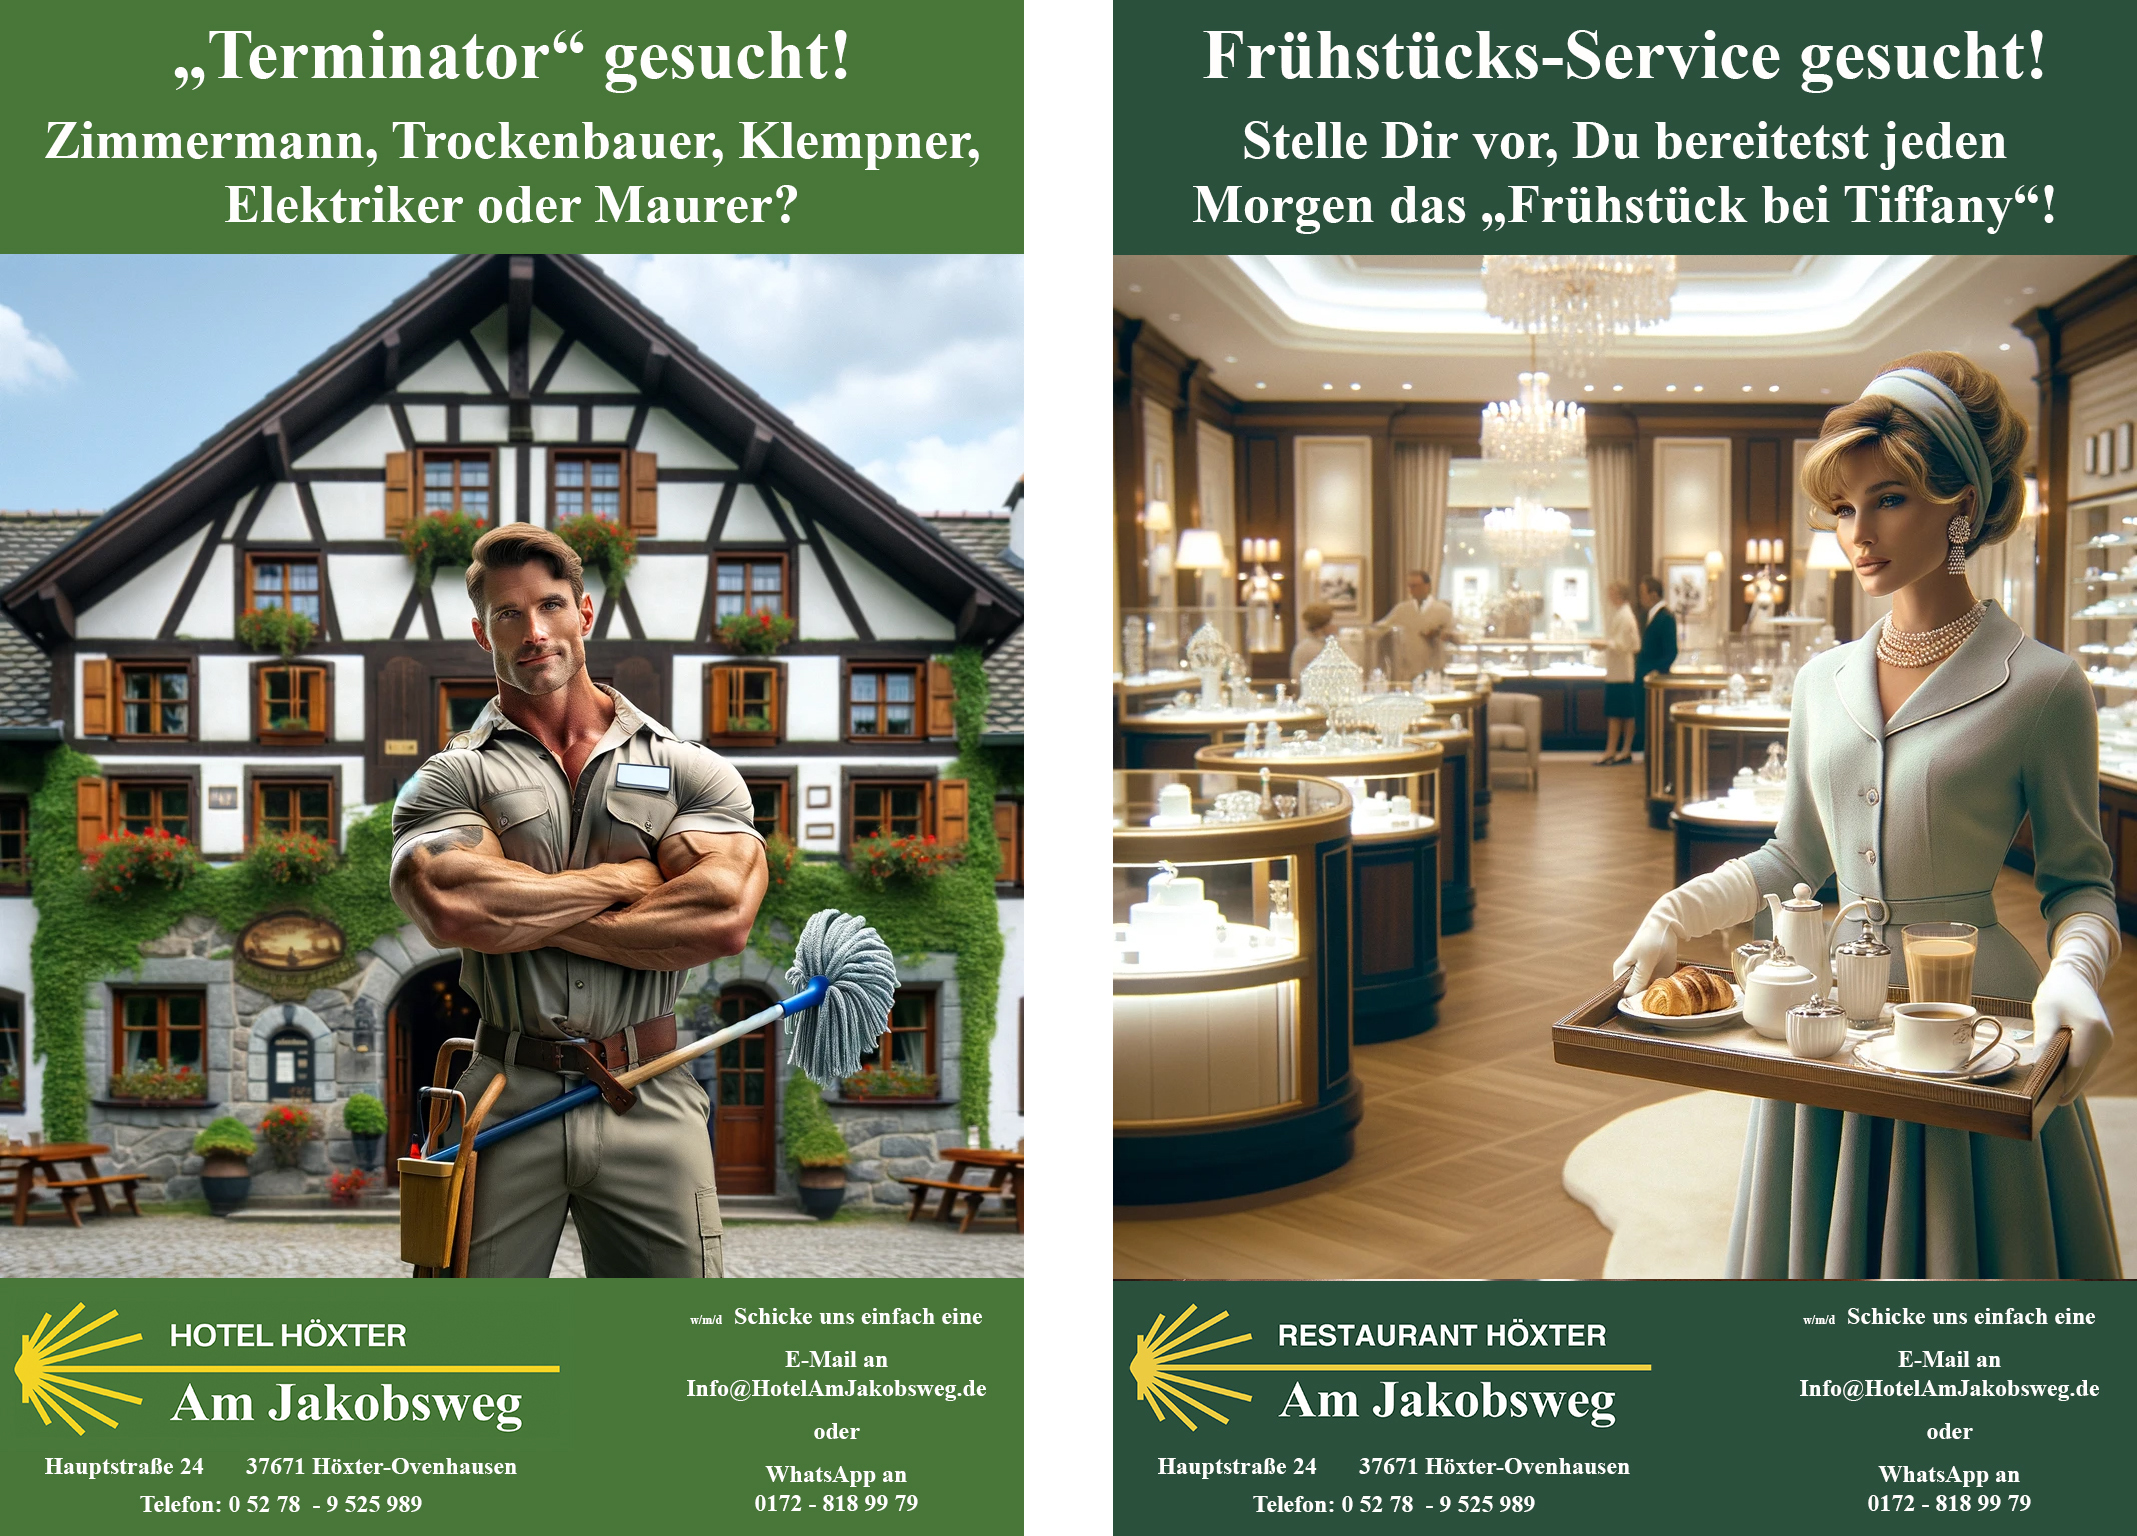 Hotel Hoexter Am Jakobsweg Jobs: Terminator und Frühstücks-Service